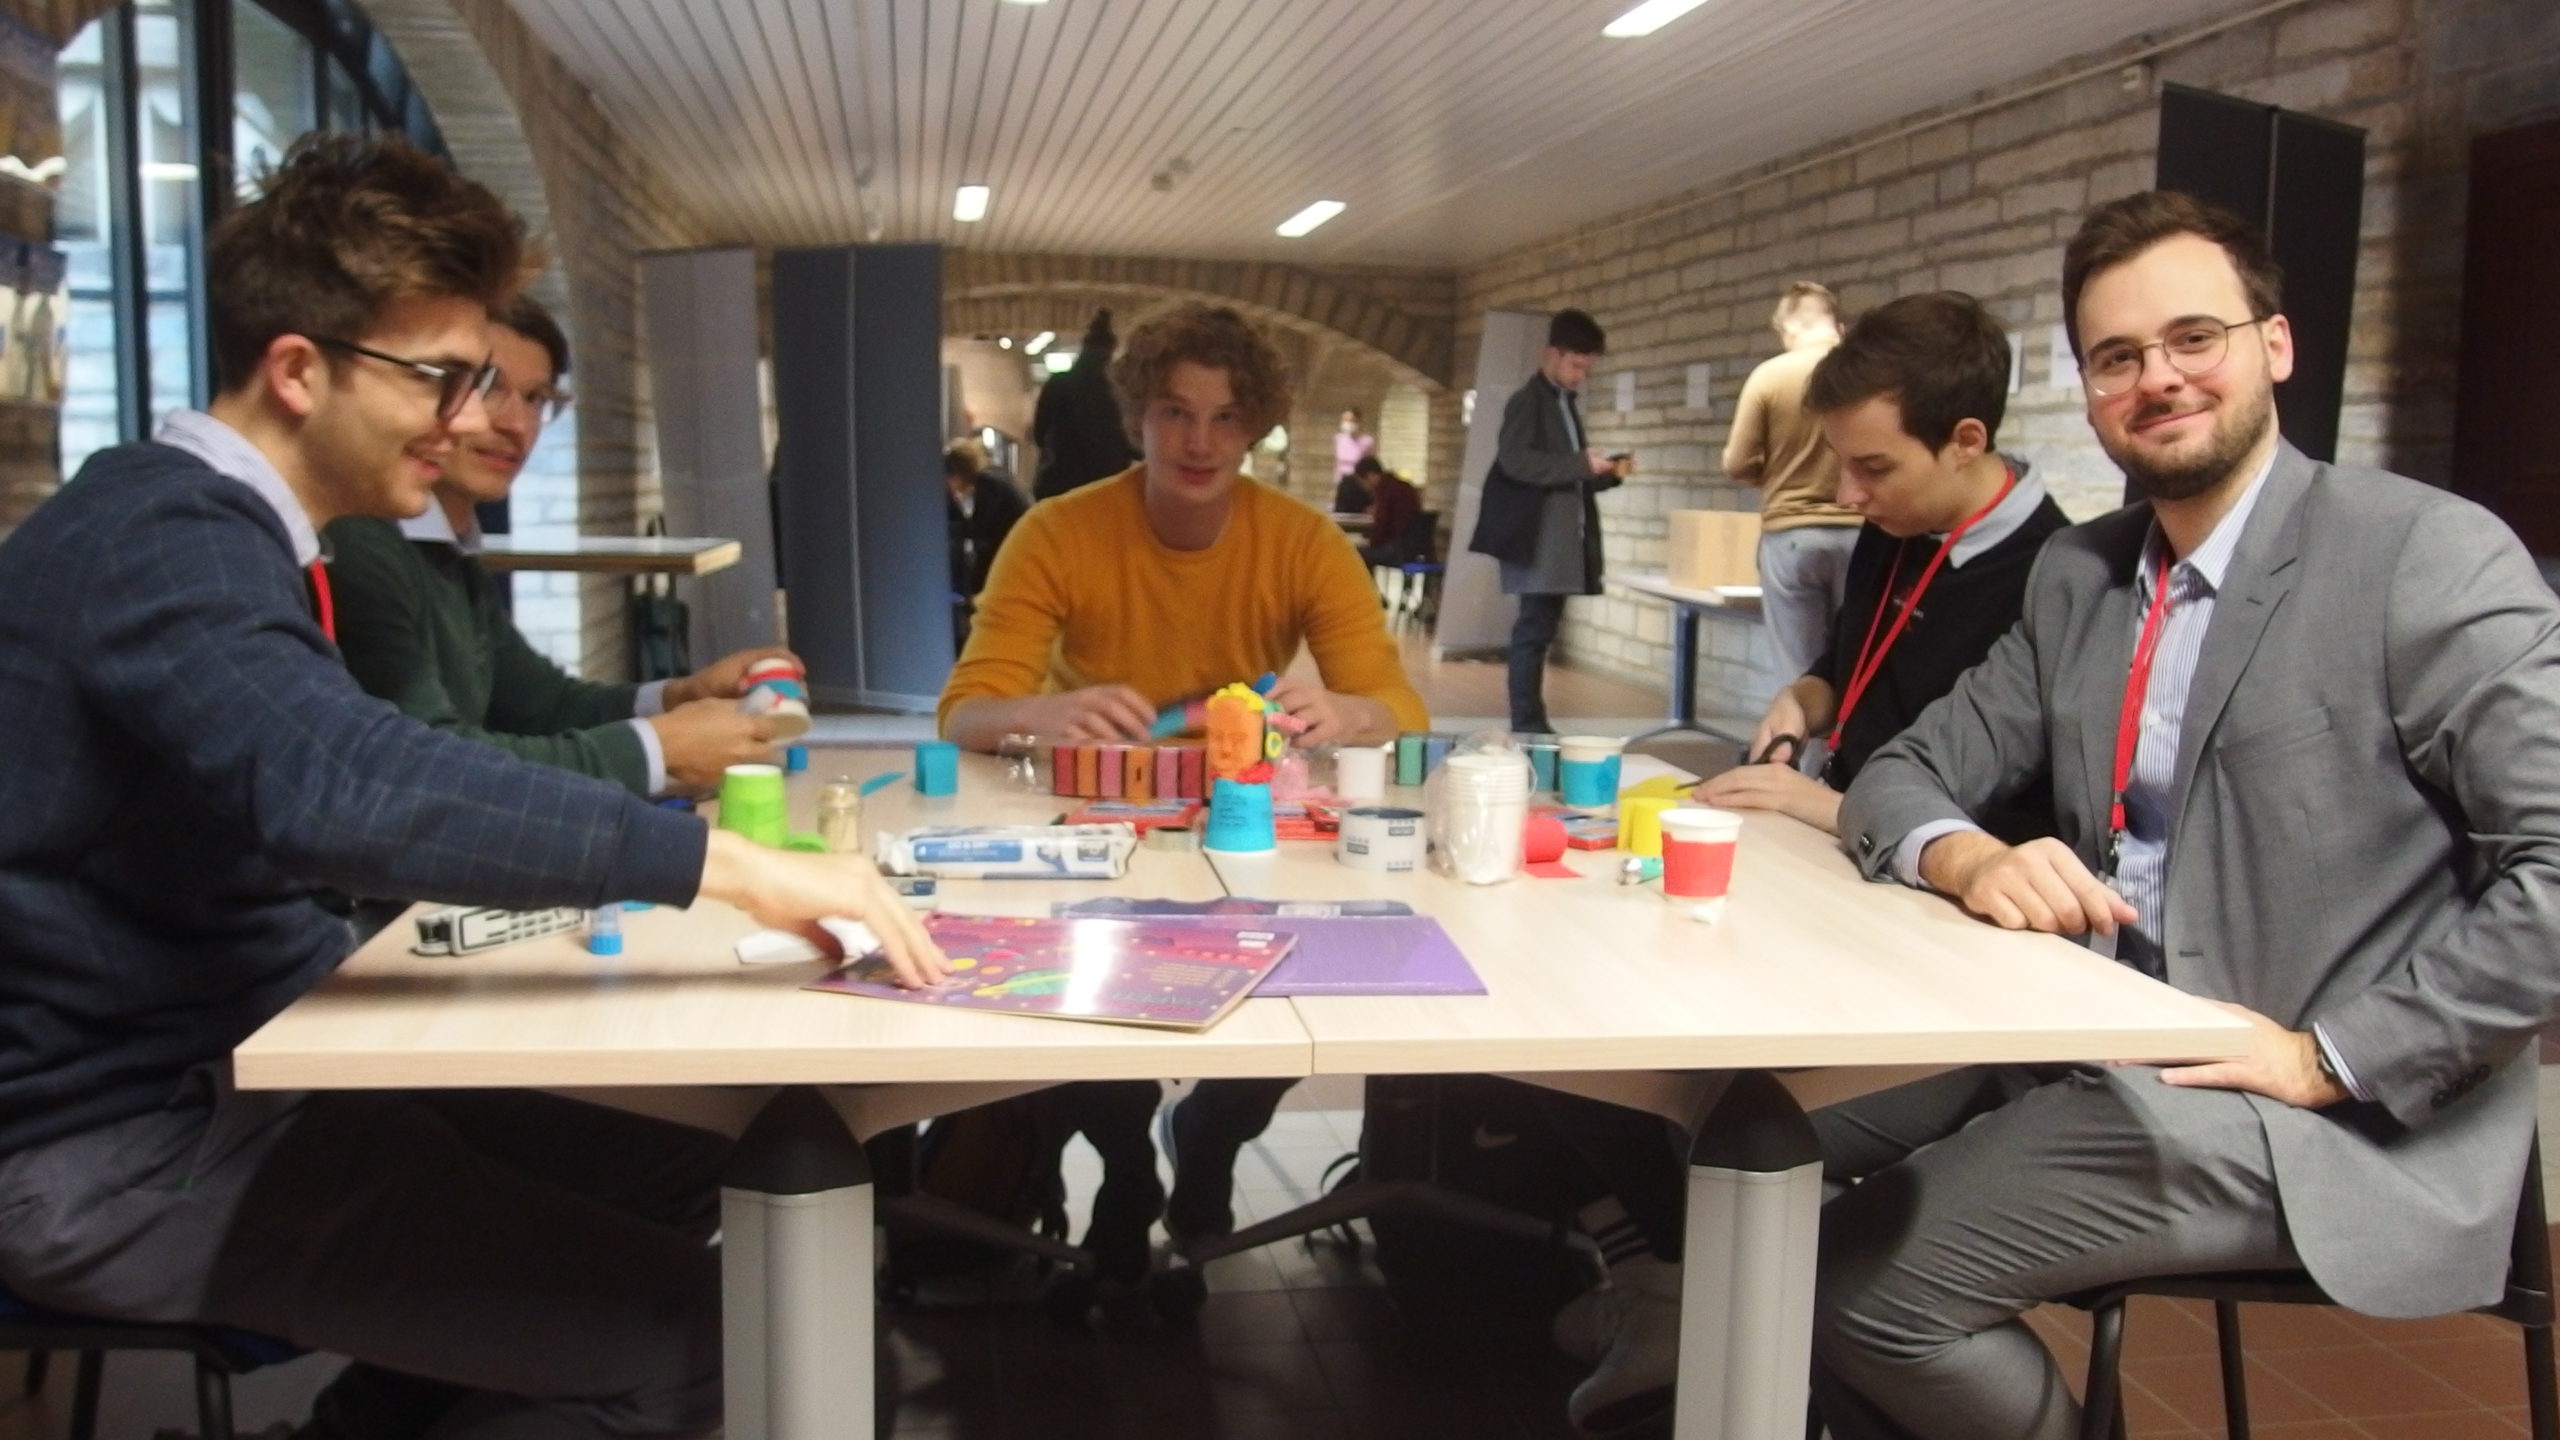 Foto: Arbeitsgruppe an einem Tisch bei der Arbeit an einem Grundsatzpapier